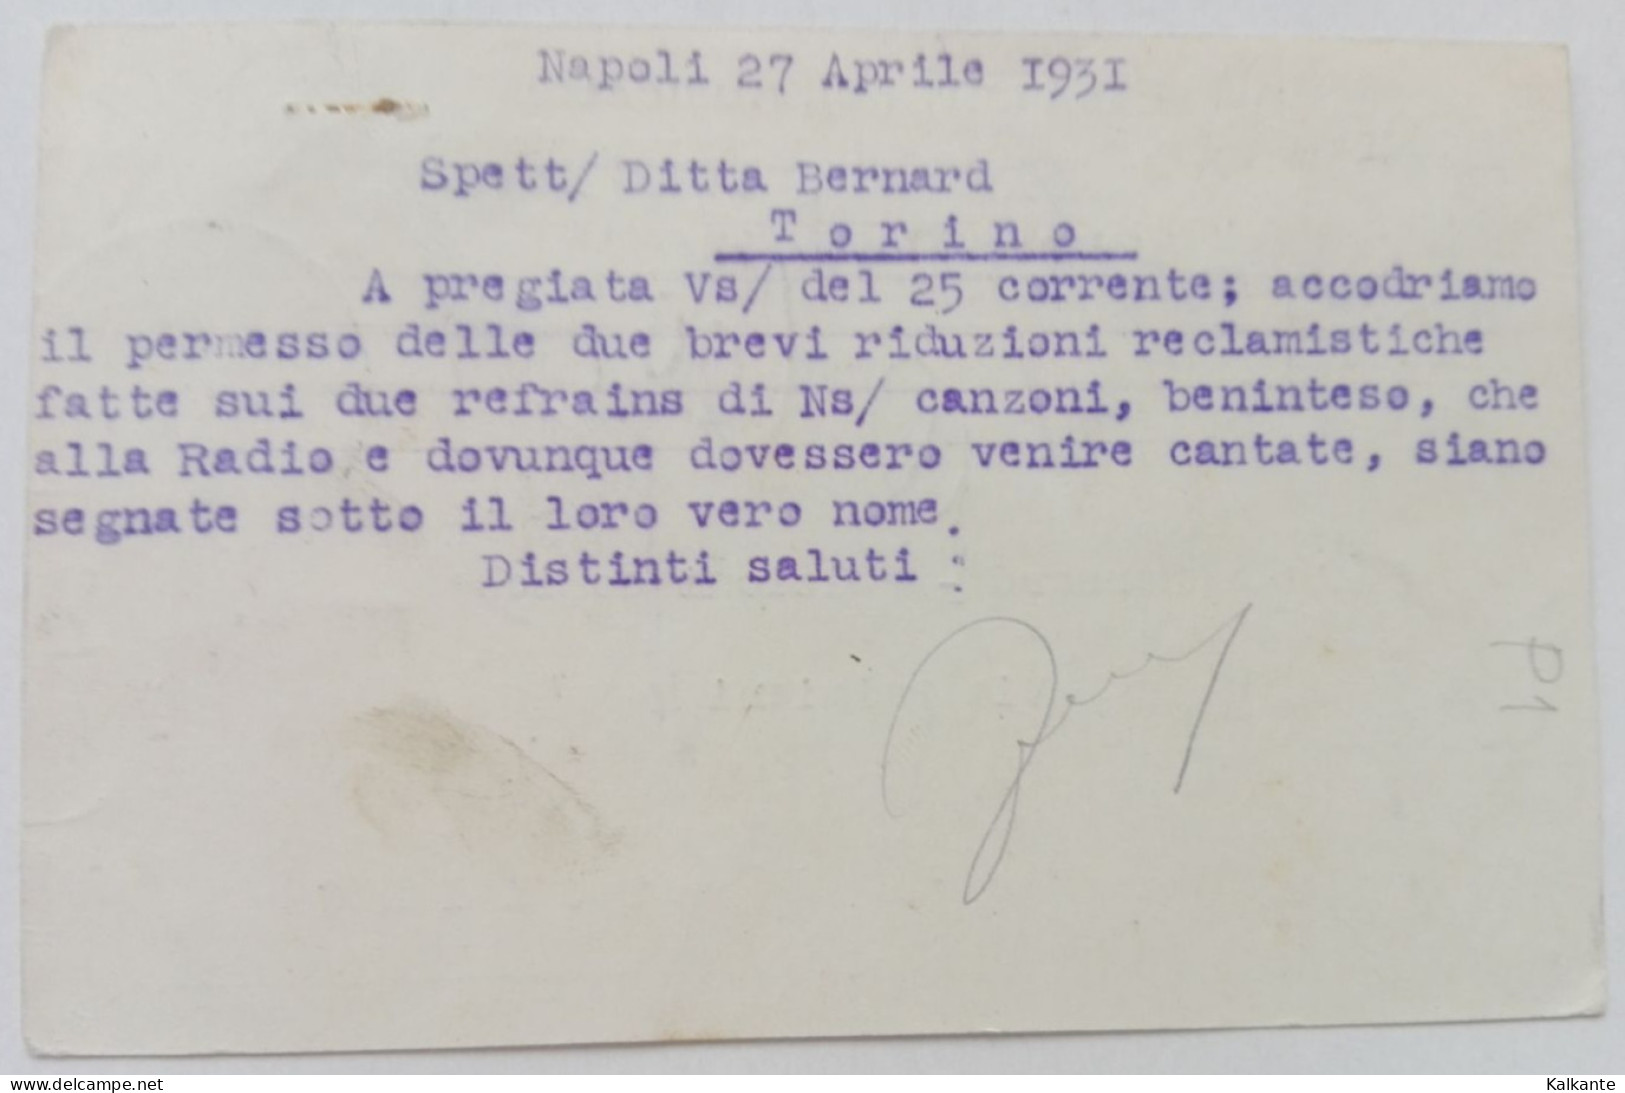 1931 - CARTOLINA POSTALE - CASA EDITRICE"LA CANZONETTA", Napoli - Postage Due